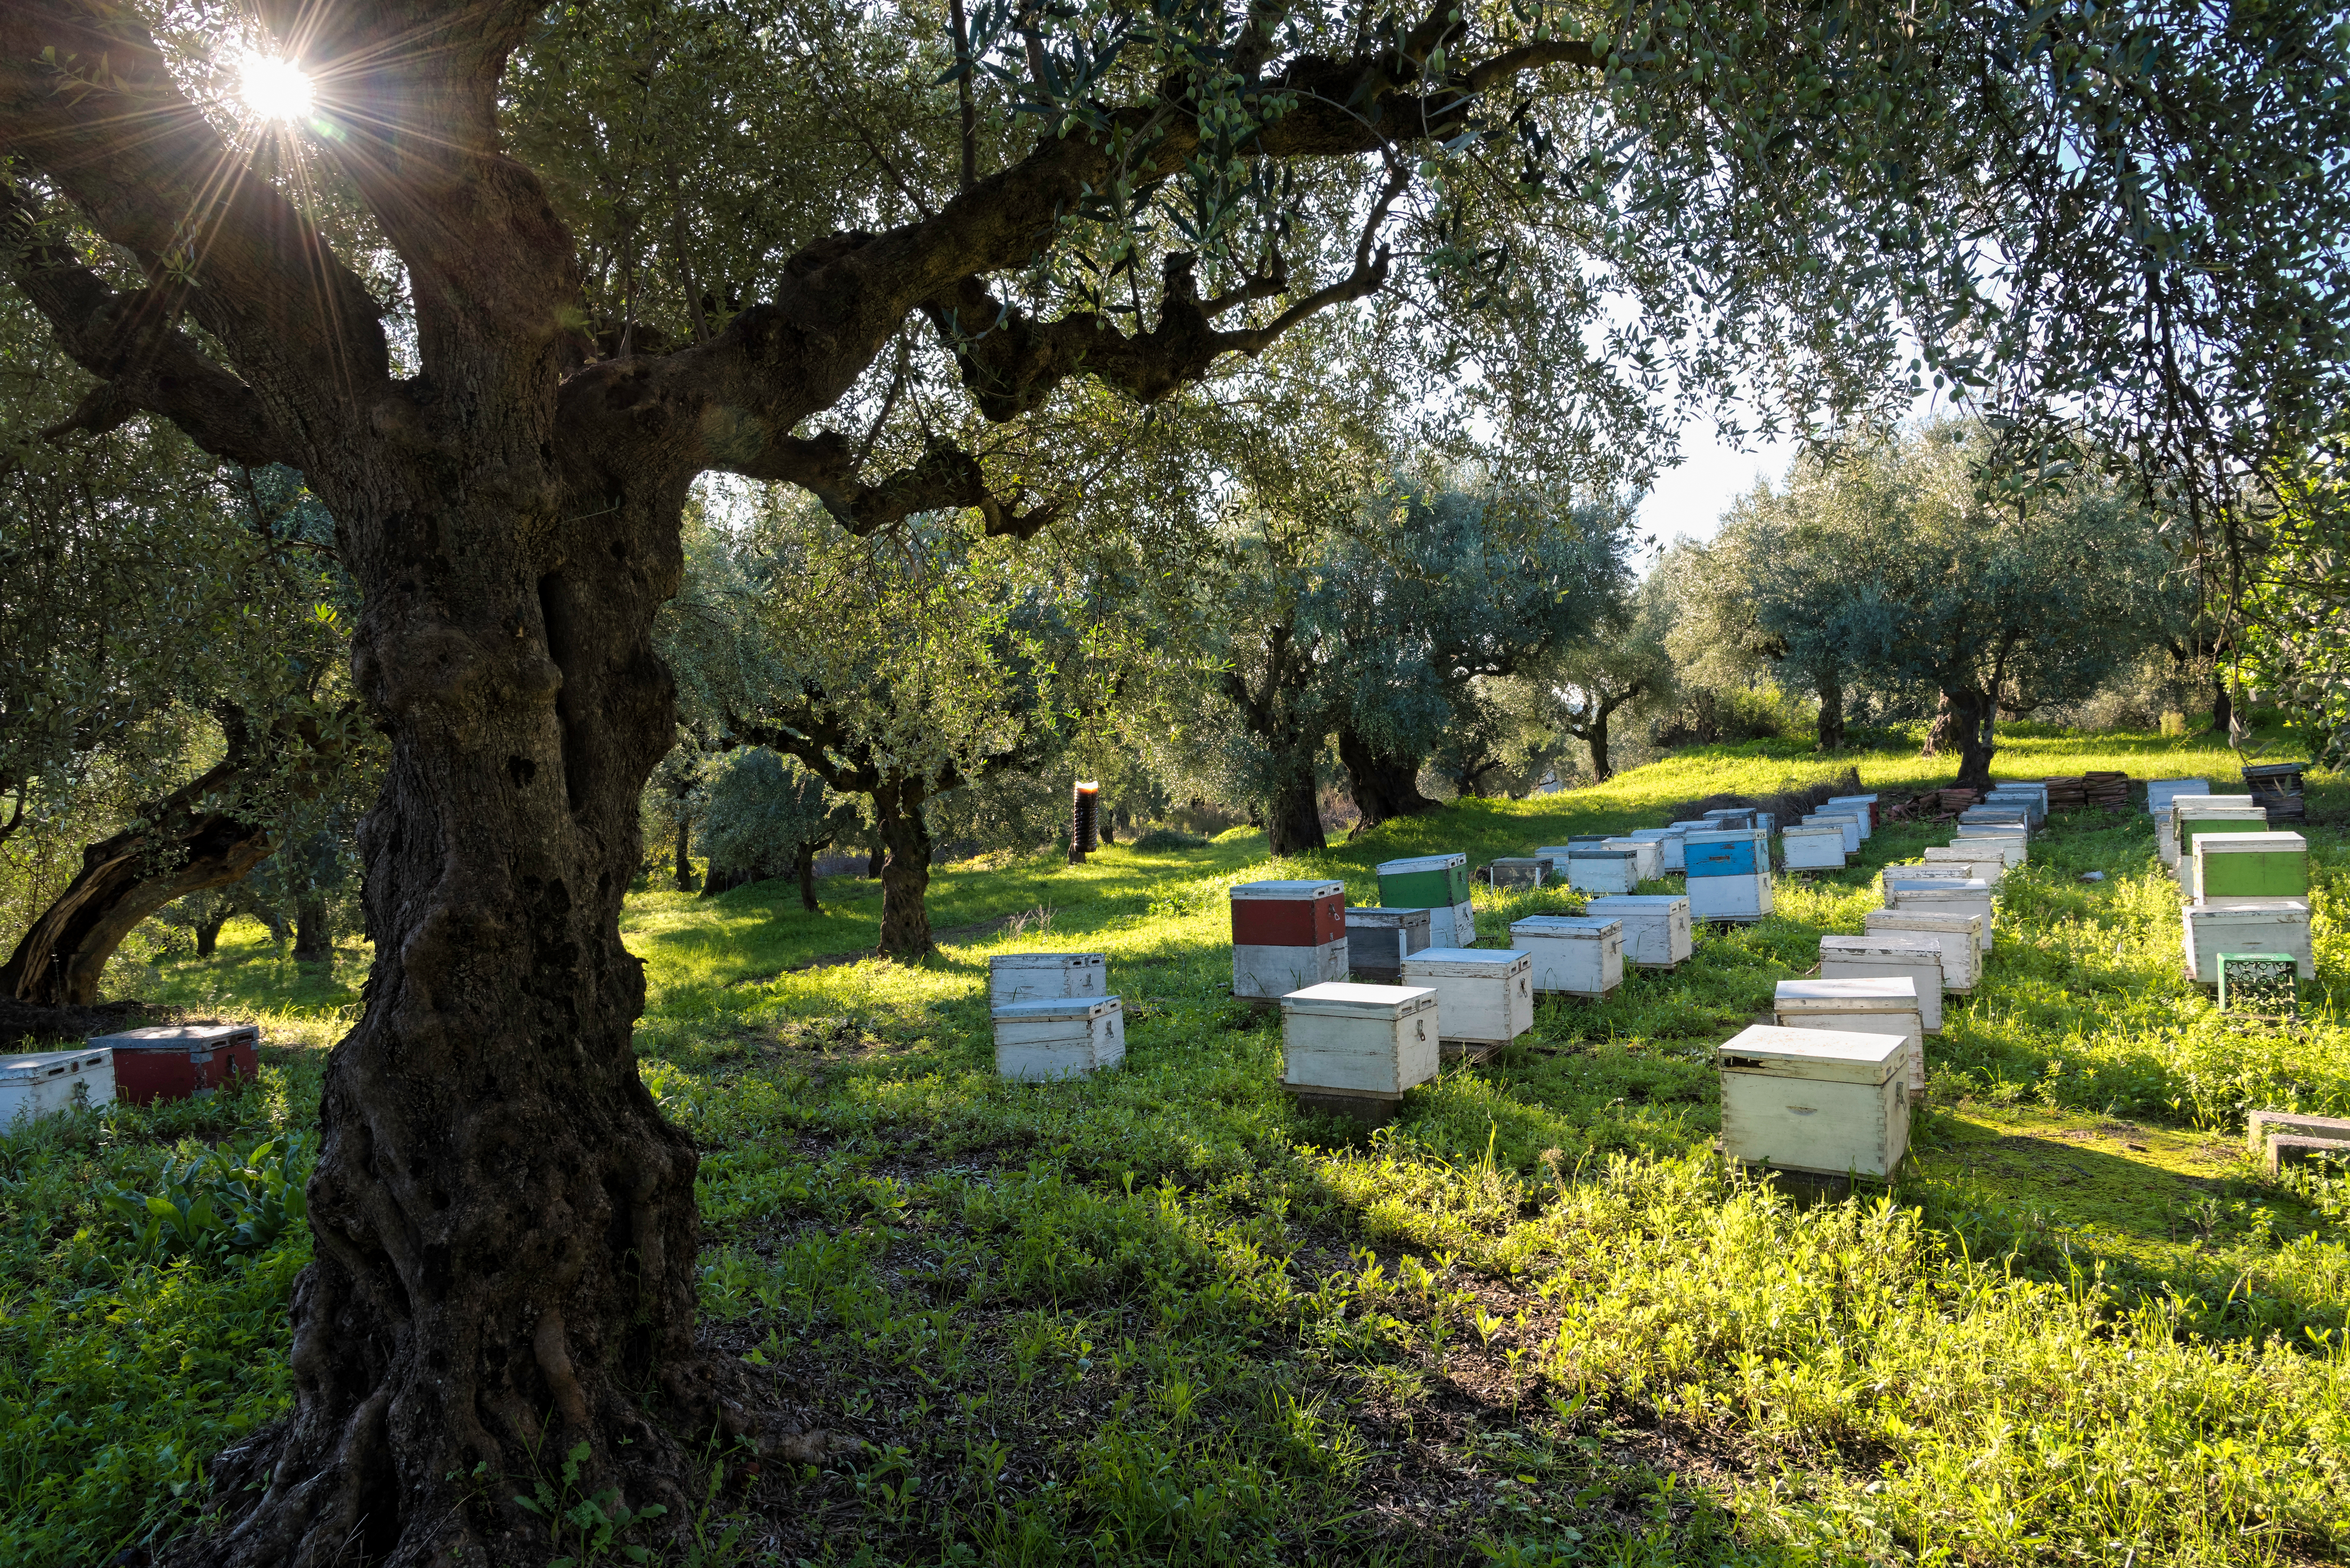 Използването на някои видове пестициди в селското стопанство обрича пчелните семейства на смърт